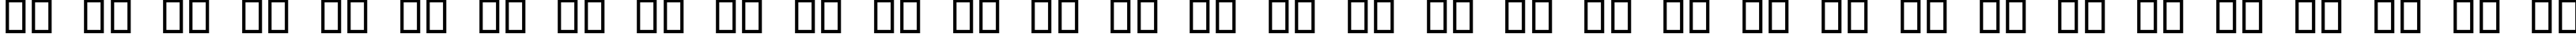 Пример написания русского алфавита шрифтом Mangal